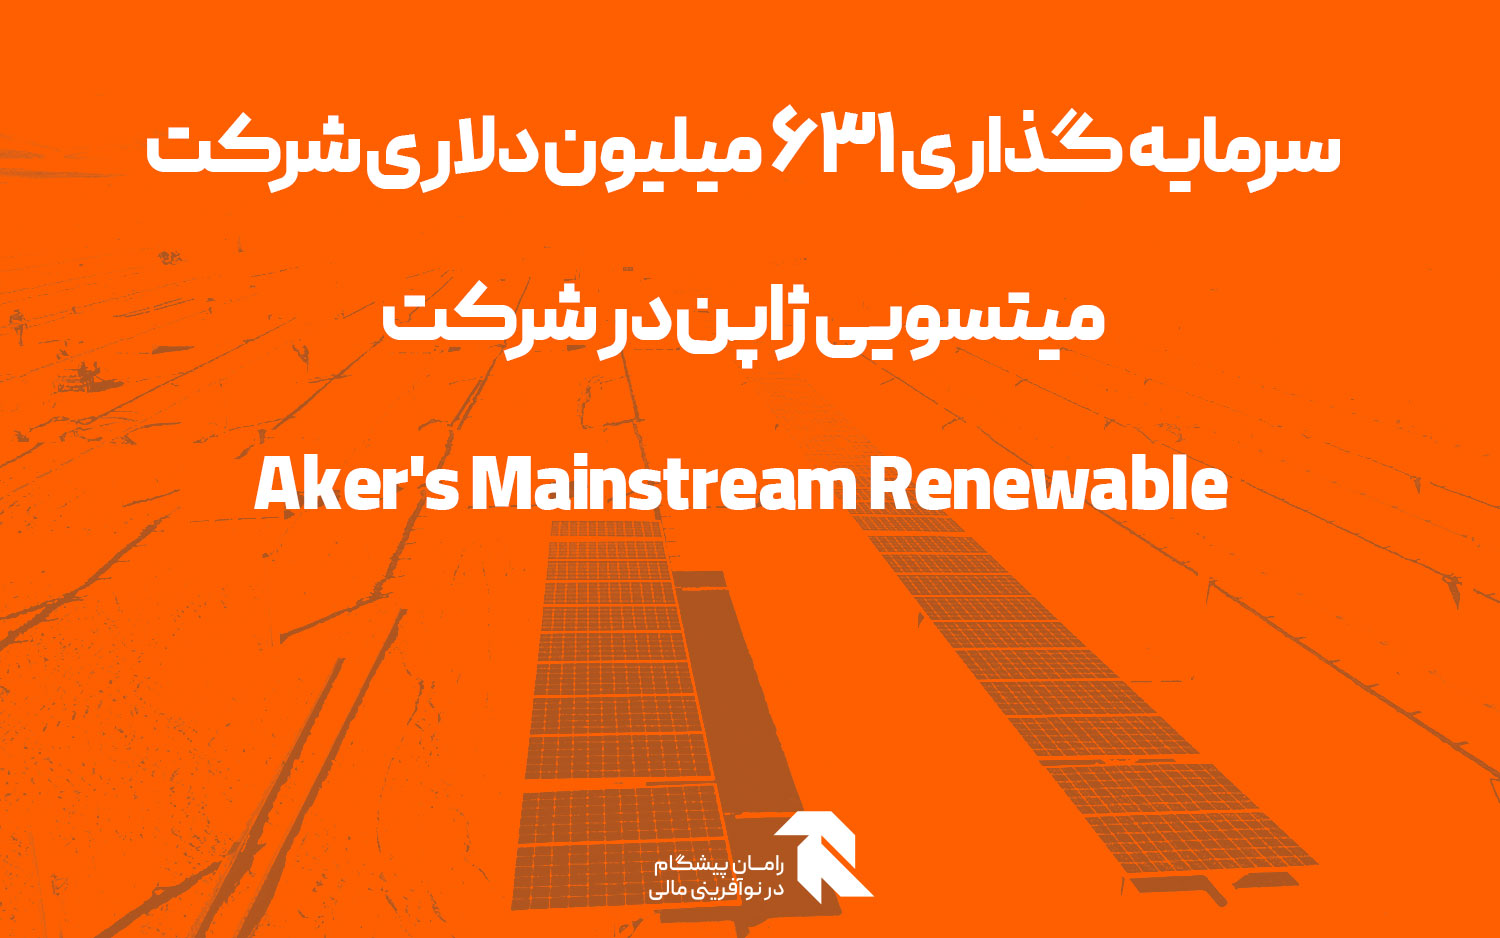 سرمایه گذاری 631 میلیون دلاری شرکت میتسویی ژاپن در شرکت Aker’s Mainstream Renewable